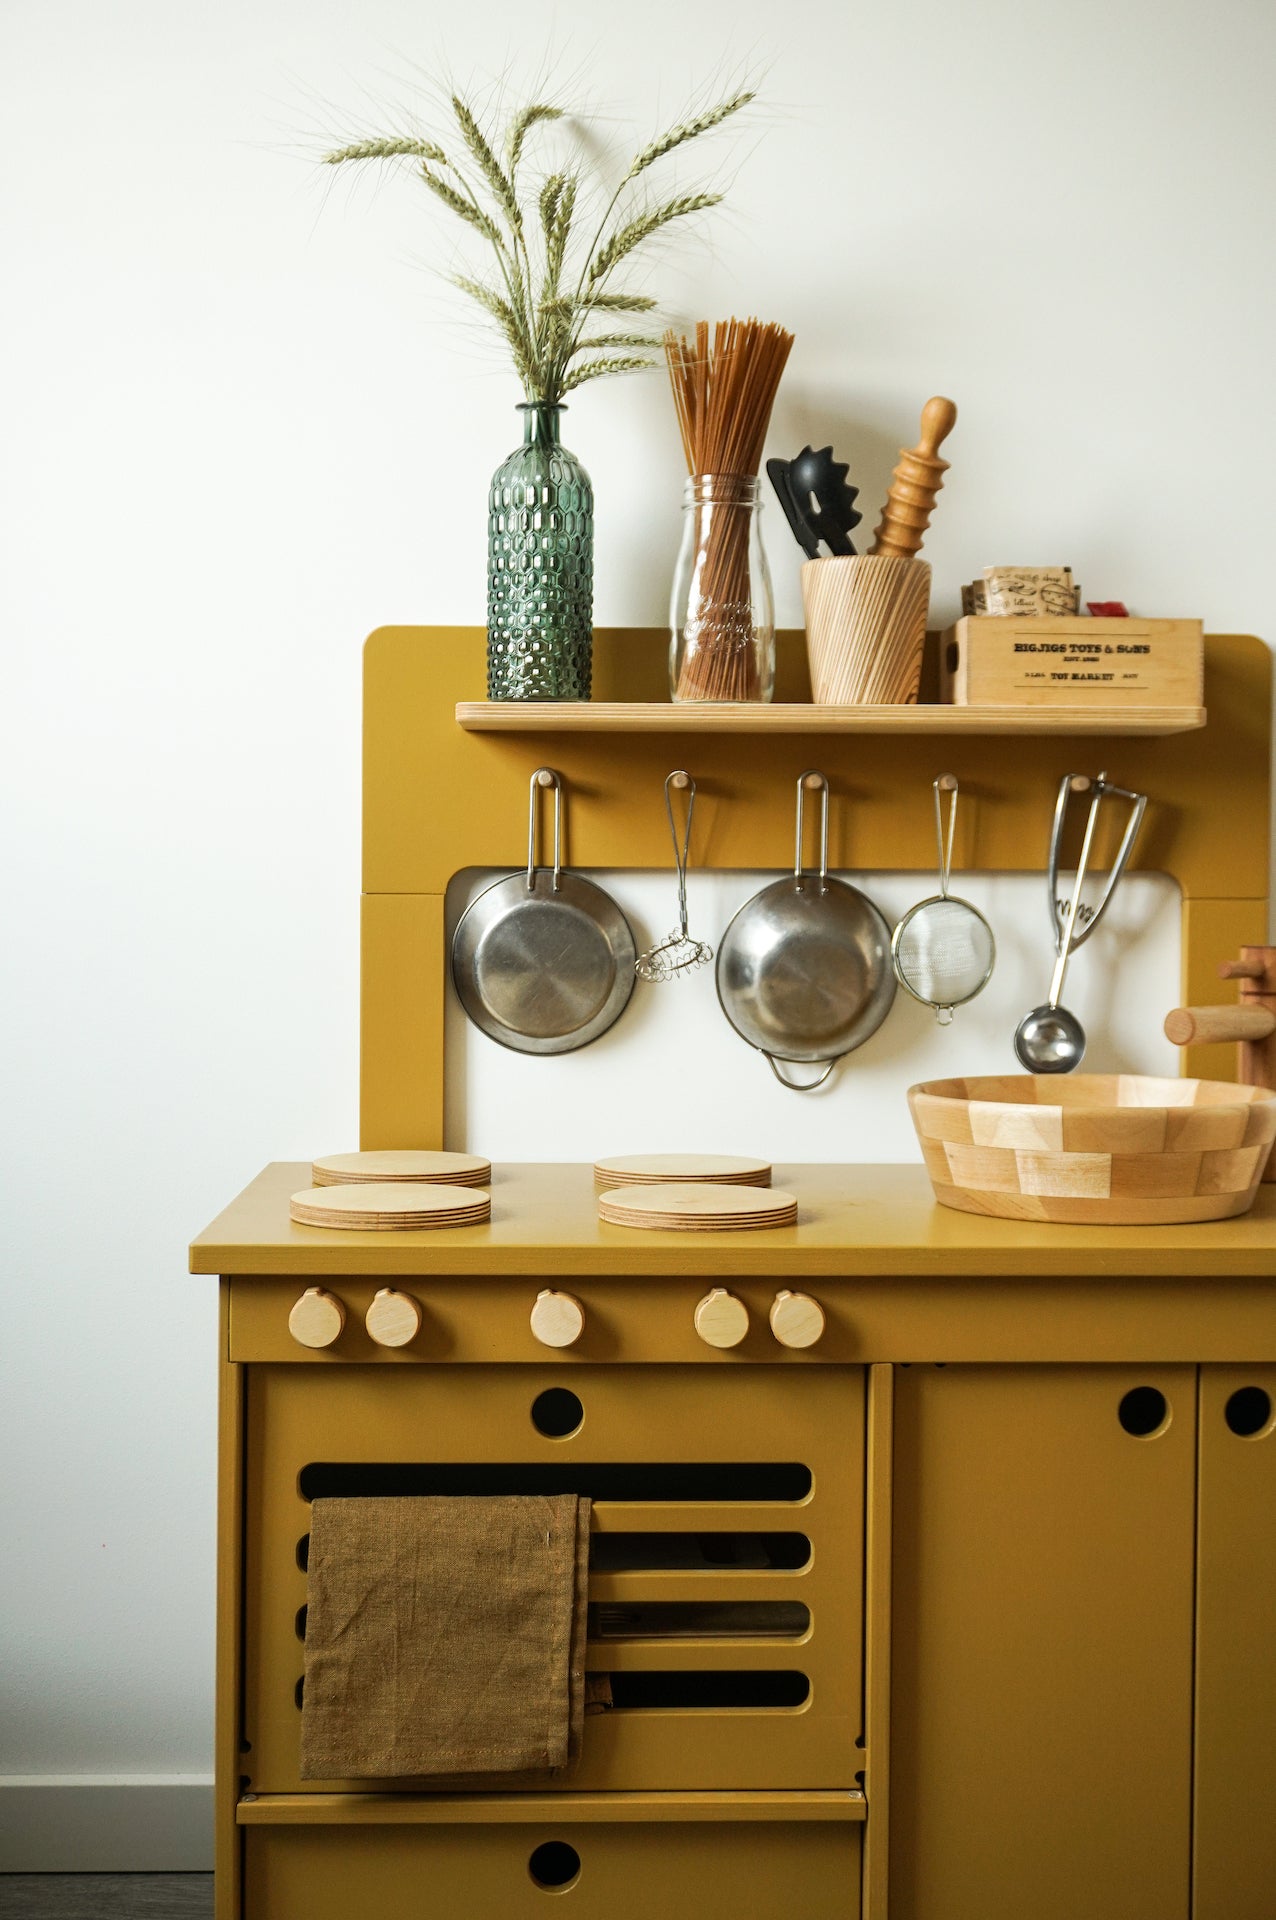 Montessori Wooden Play Kitchen – Midmini Play Kitchen